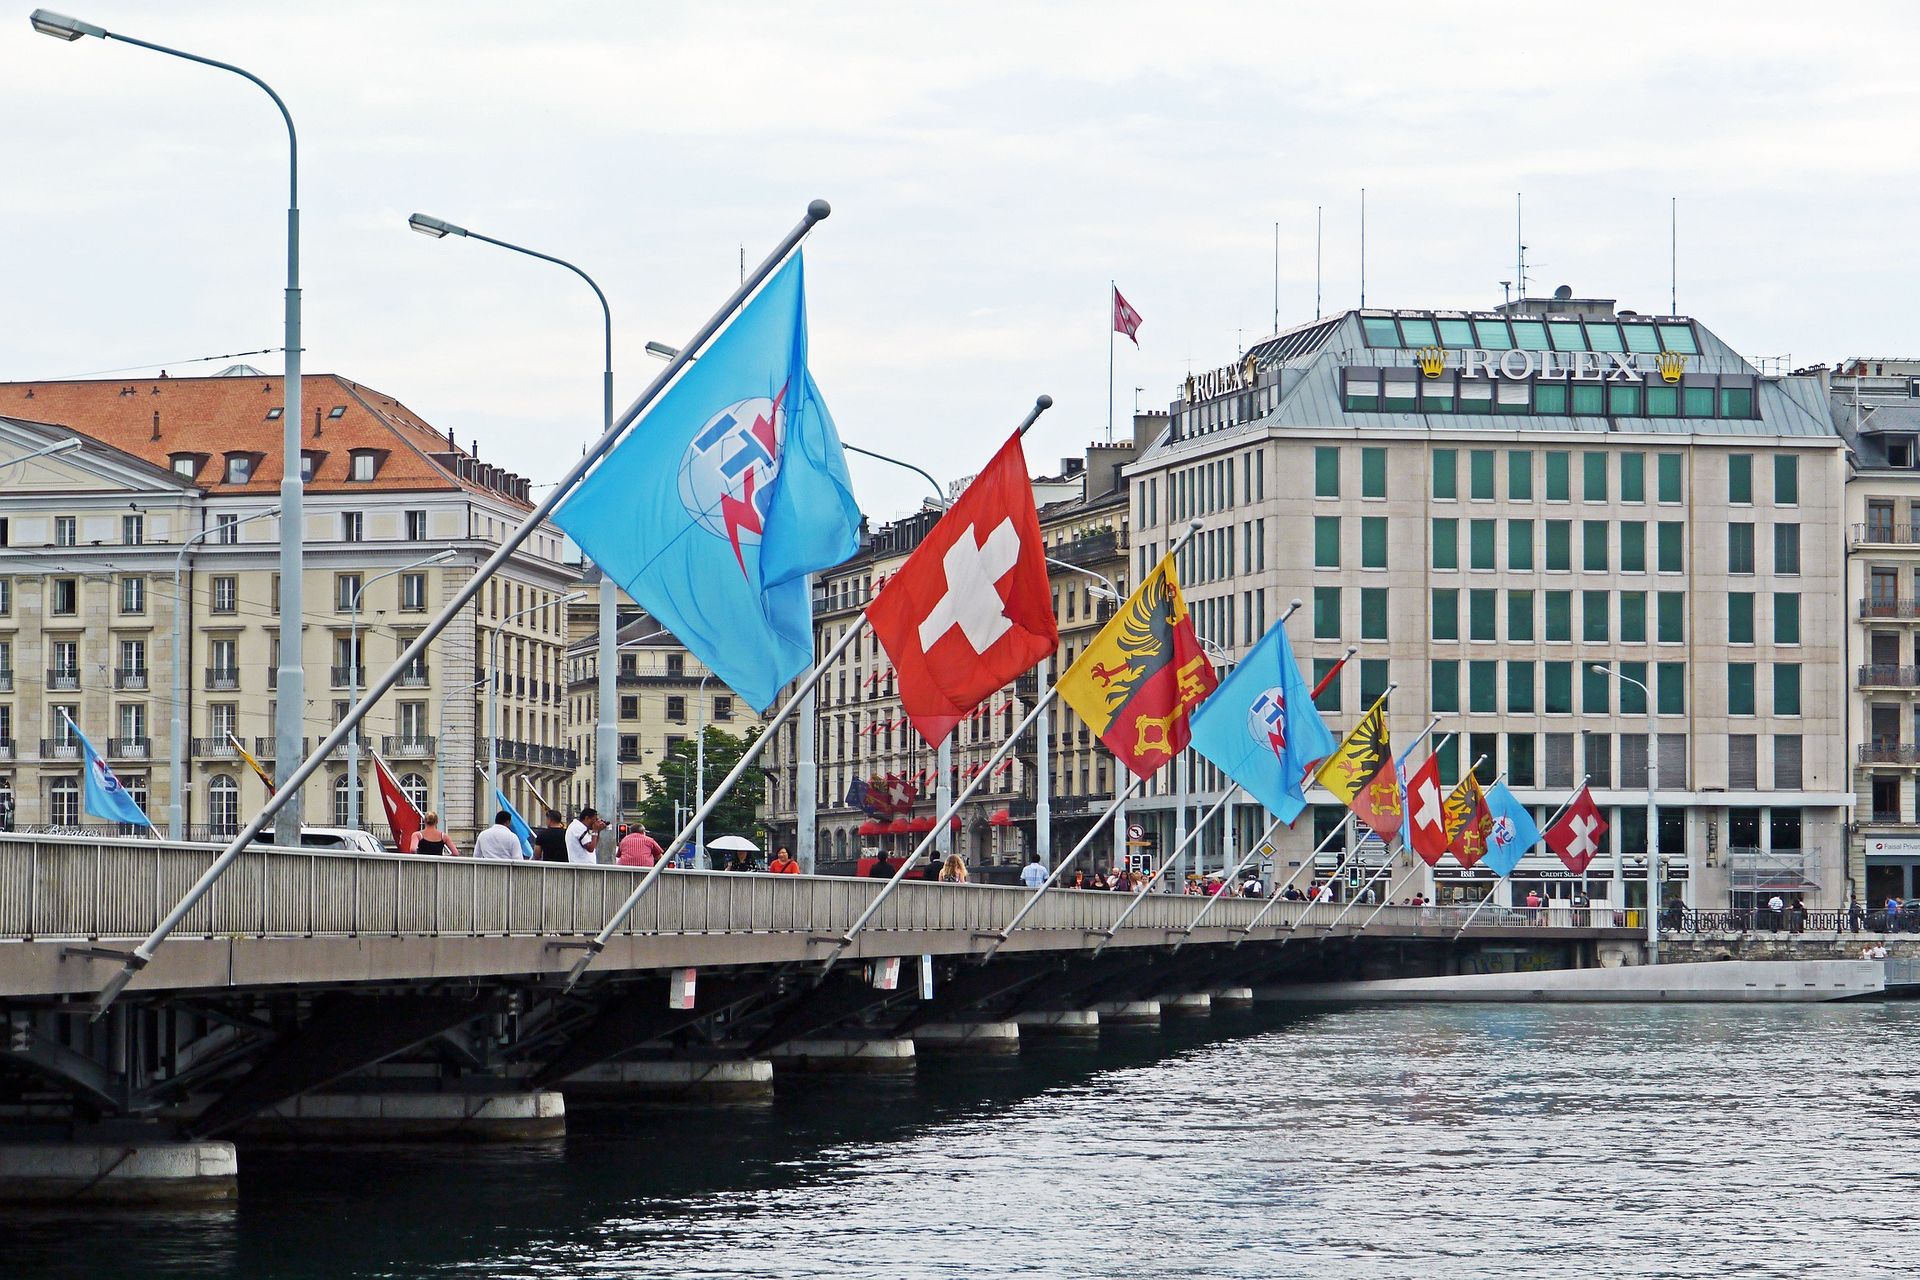 Geneva este unul dintre cele mai populate orașe și cu cea mai mare densitate de infrastructură din Elveția